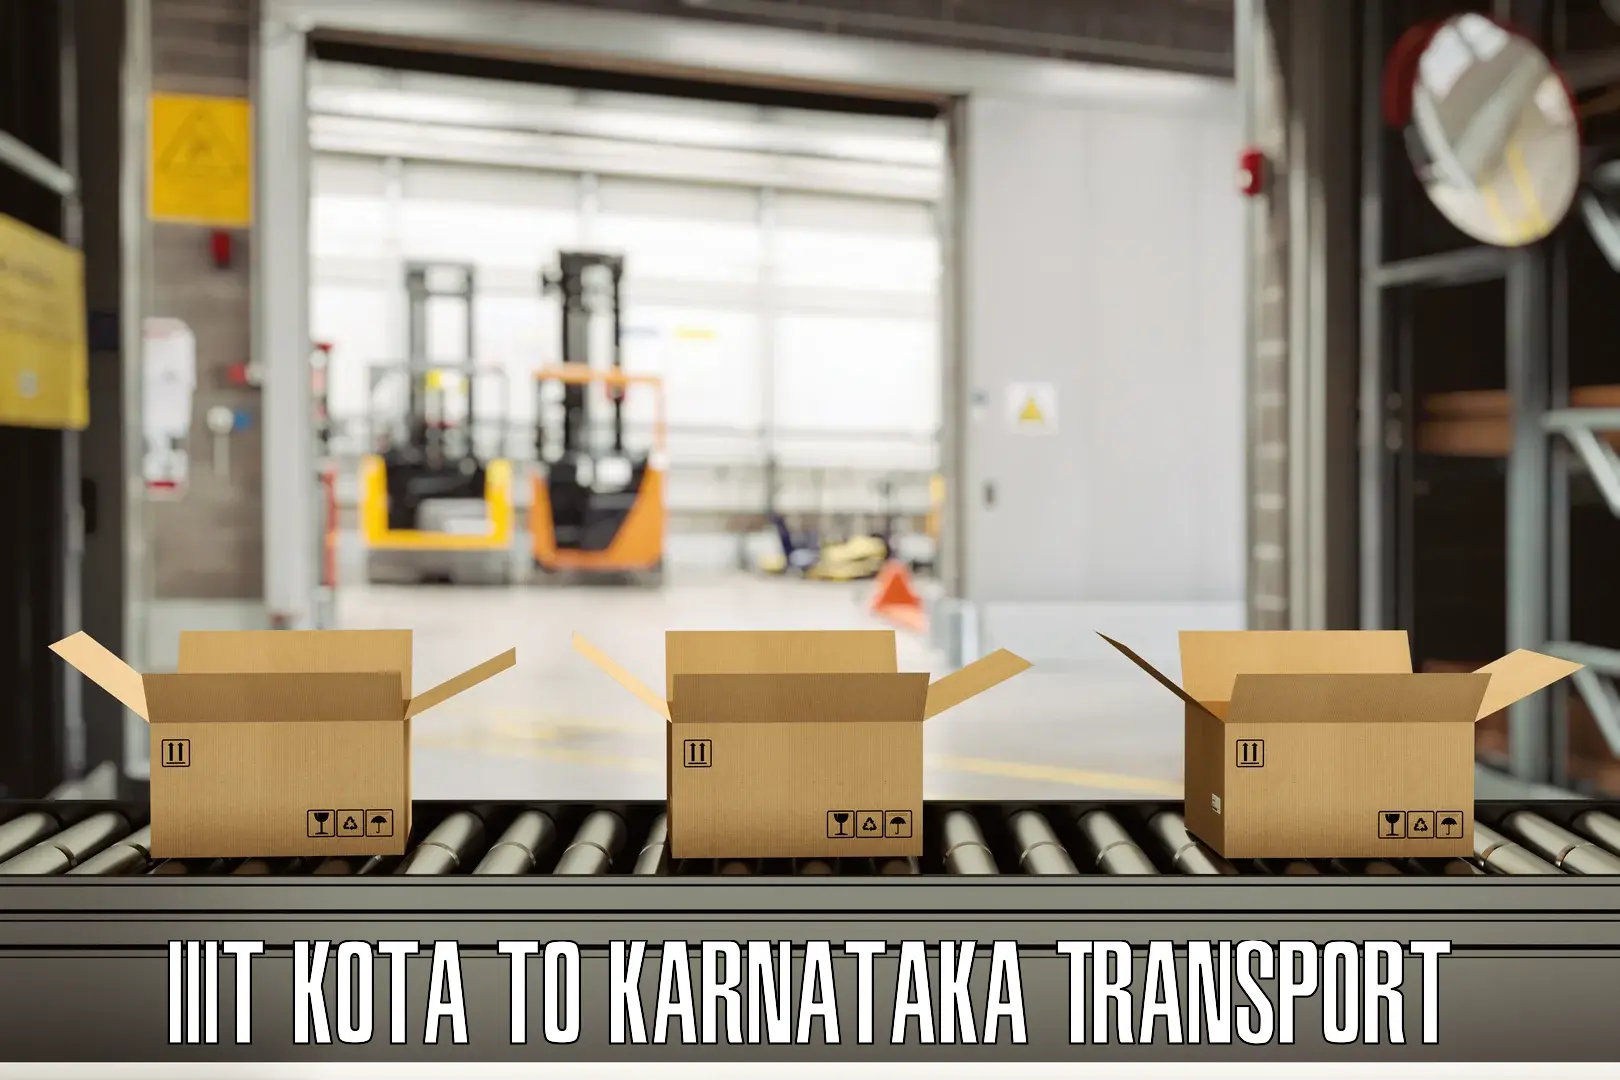 Daily parcel service transport IIIT Kota to Aland Kalaburagi